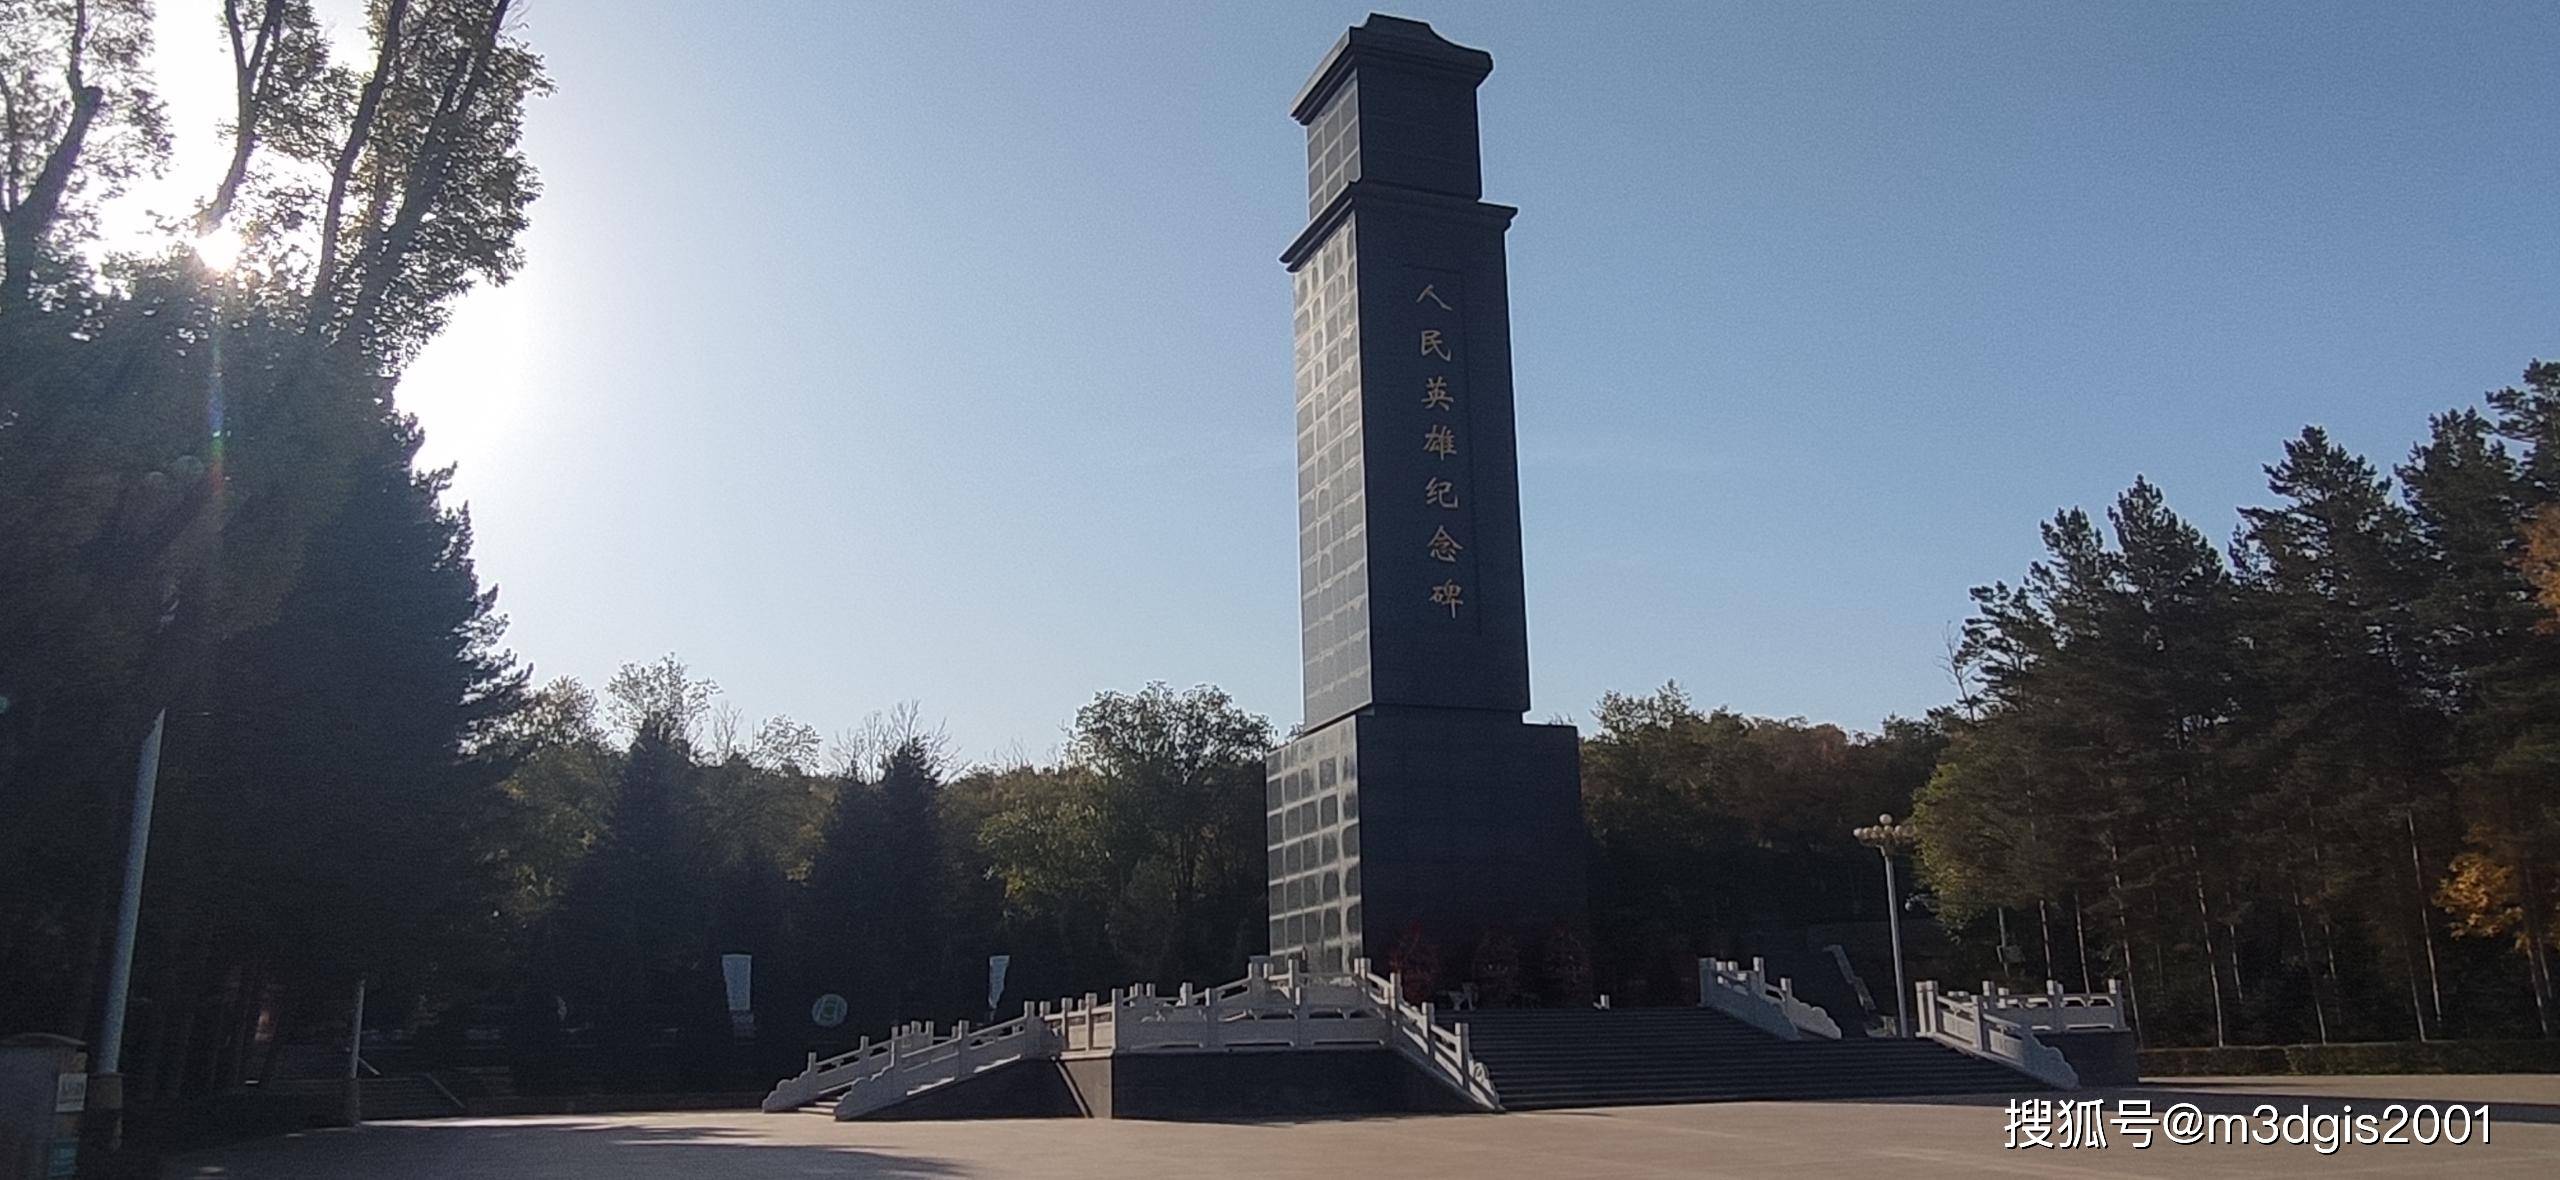 年10月24日新疆某部队国产三维沙盘项目交付,瞻仰乌鲁木齐市烈士陵园!